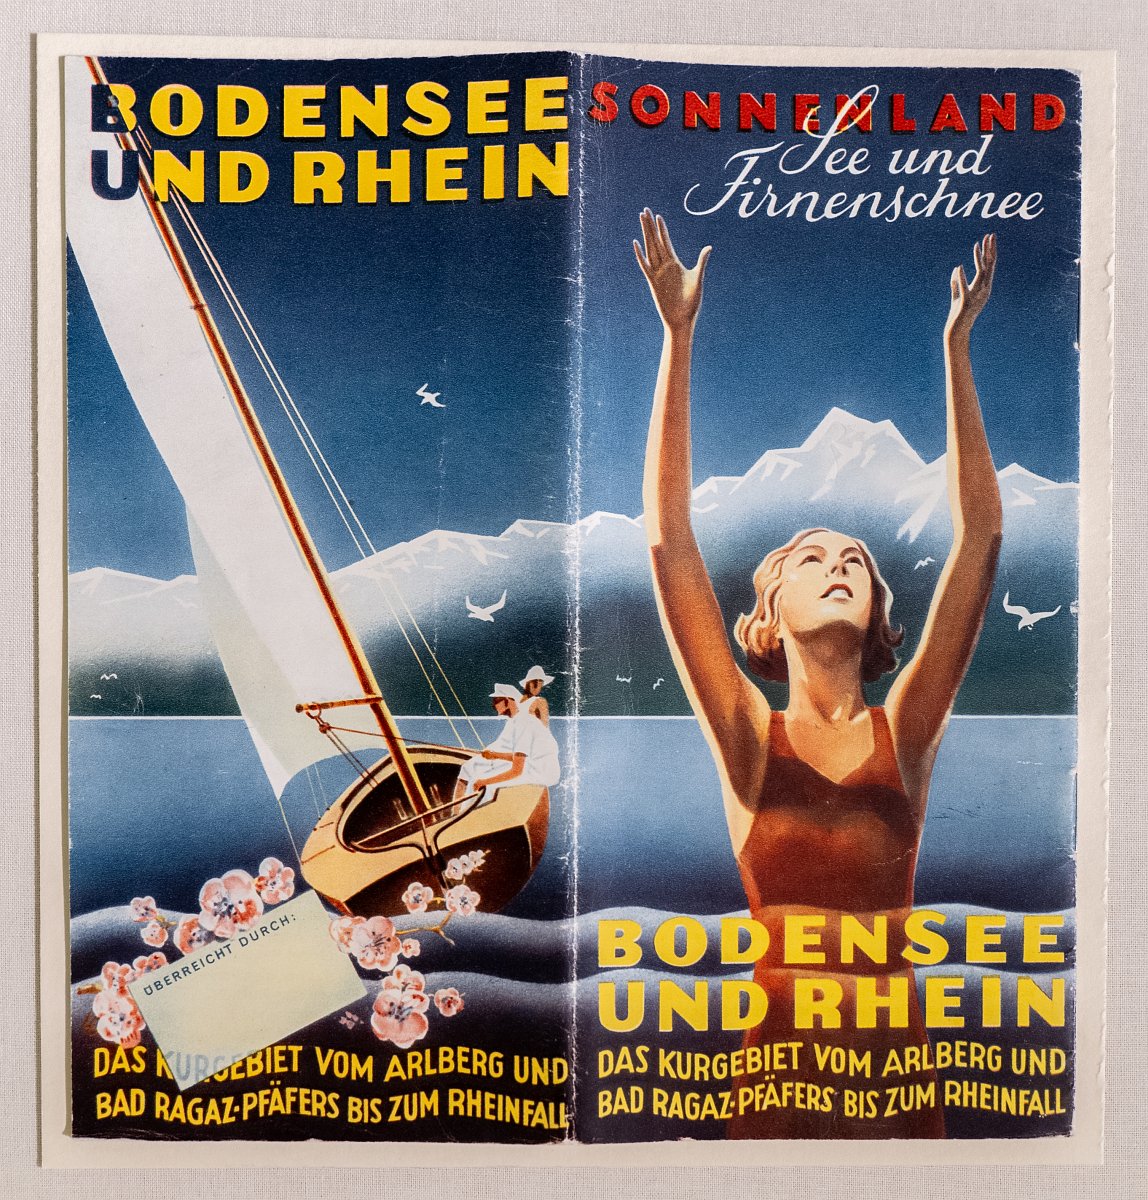 Werbeplakat "Sonnenland: Bodensee und Rhein" für das Kurgebiet vom Arlberg und Bad Ragaz-Pfäfers bis zum Rheinfall.